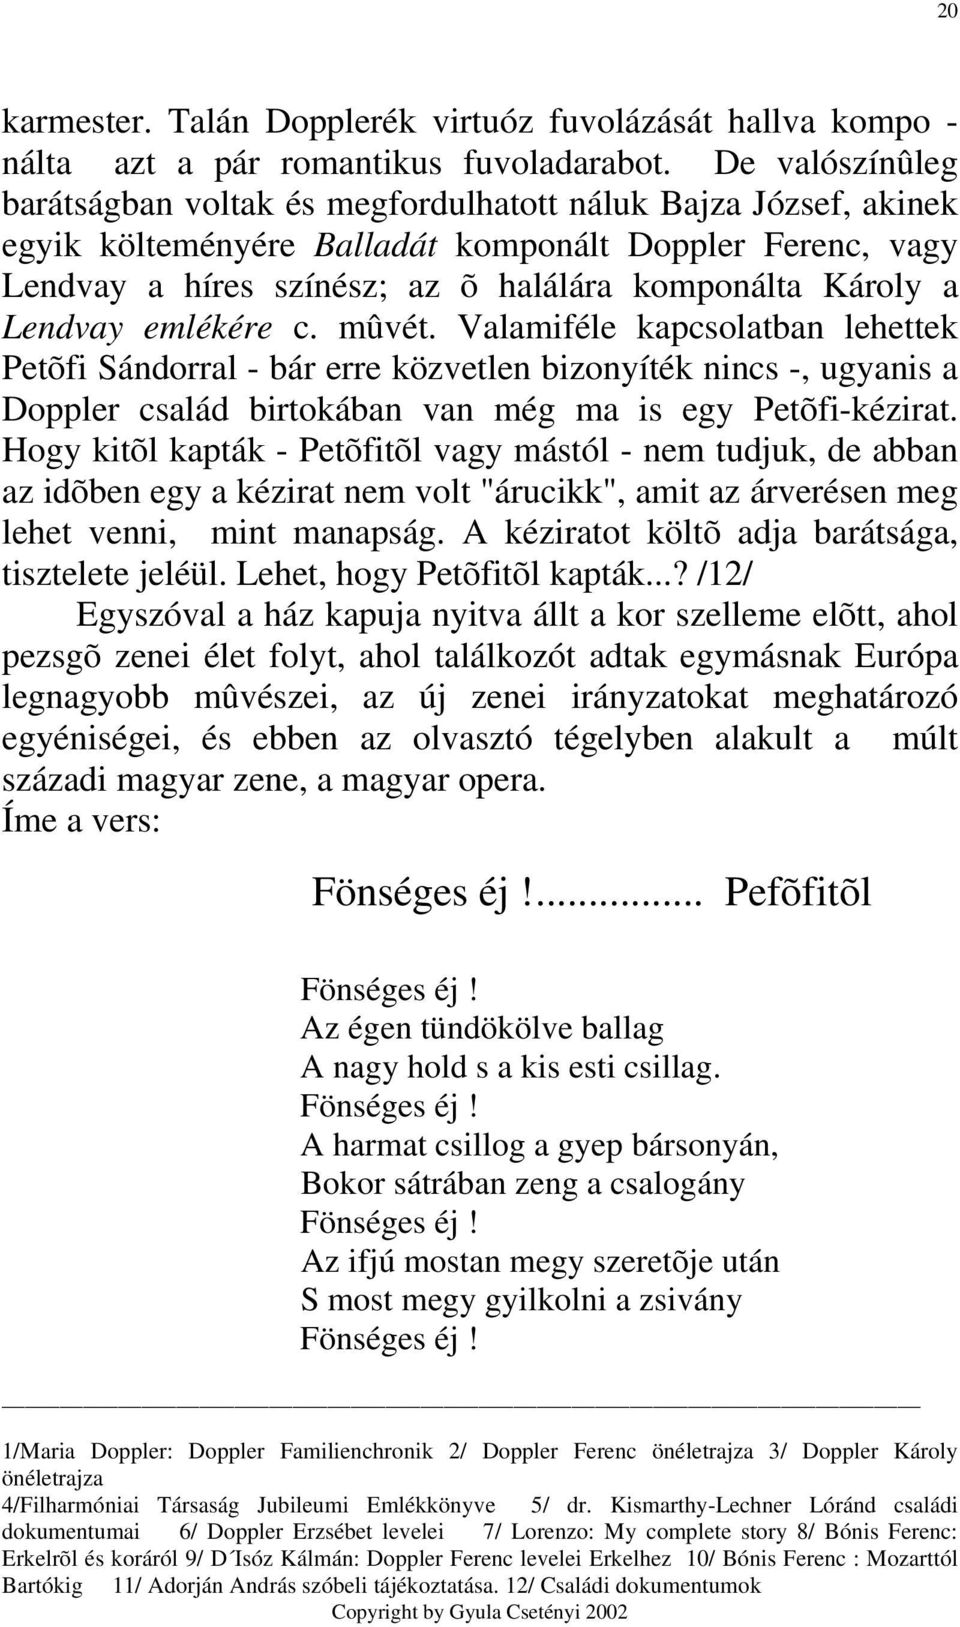 Lendvay emlékére c. mûvét. Valamiféle kapcsolatban lehettek Petõfi Sándorral - bár erre közvetlen bizonyíték nincs -, ugyanis a Doppler család birtokában van még ma is egy Petõfi-kézirat.